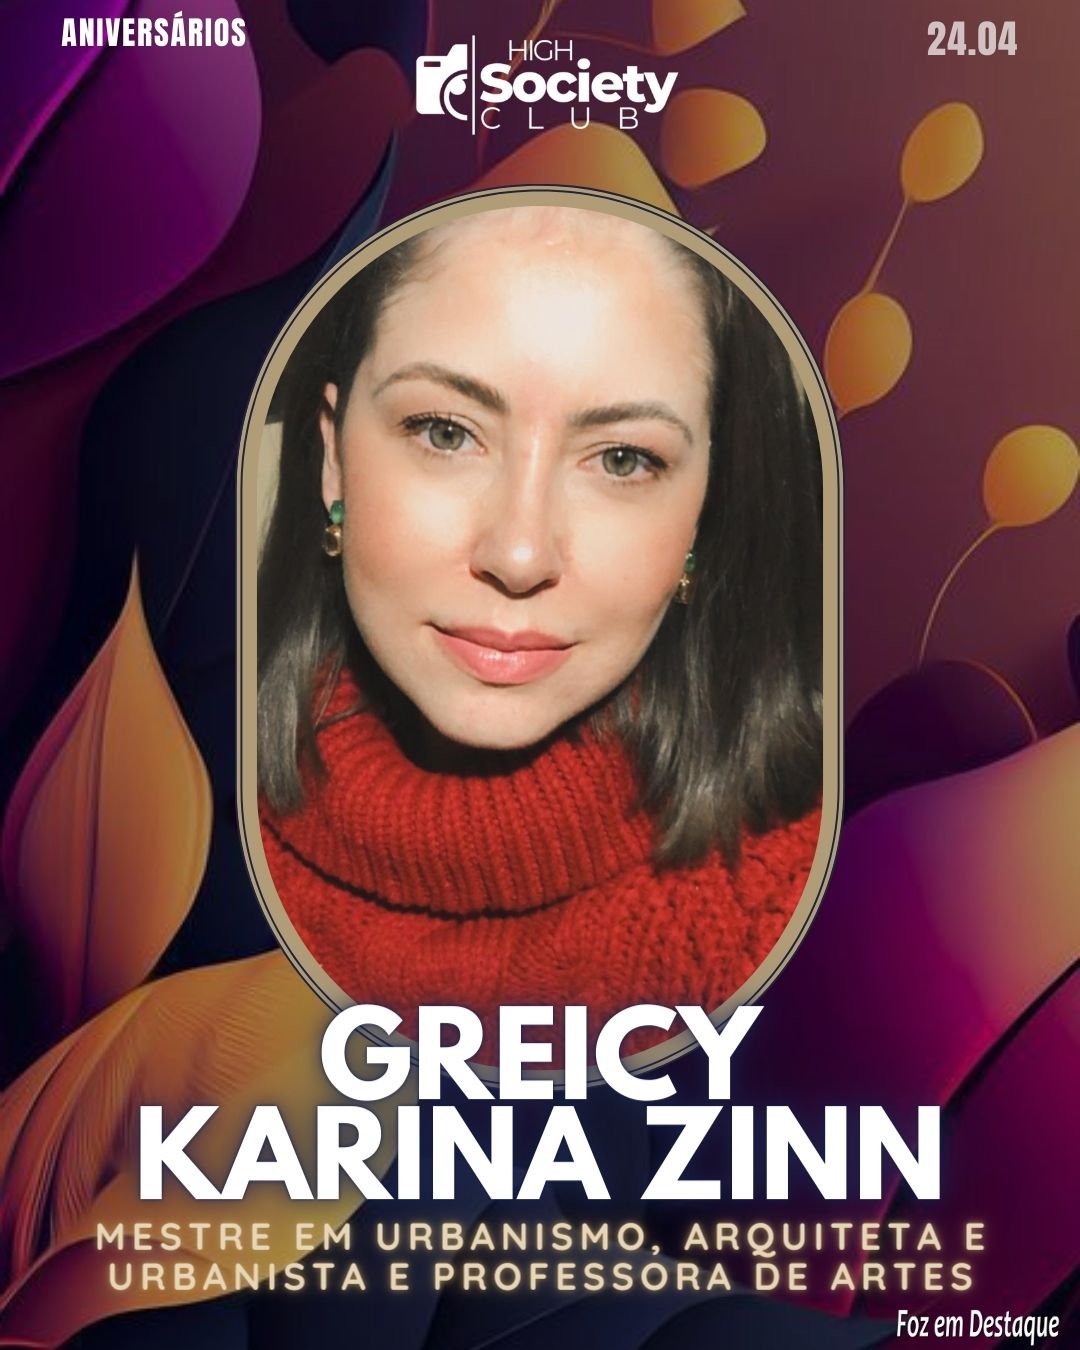 Greicy Karina Zinn - Arquiteta e Urbanista e Professora de Artes.
 Aniversários 24 de Abril 2024 High Society Club Foz em Destaque